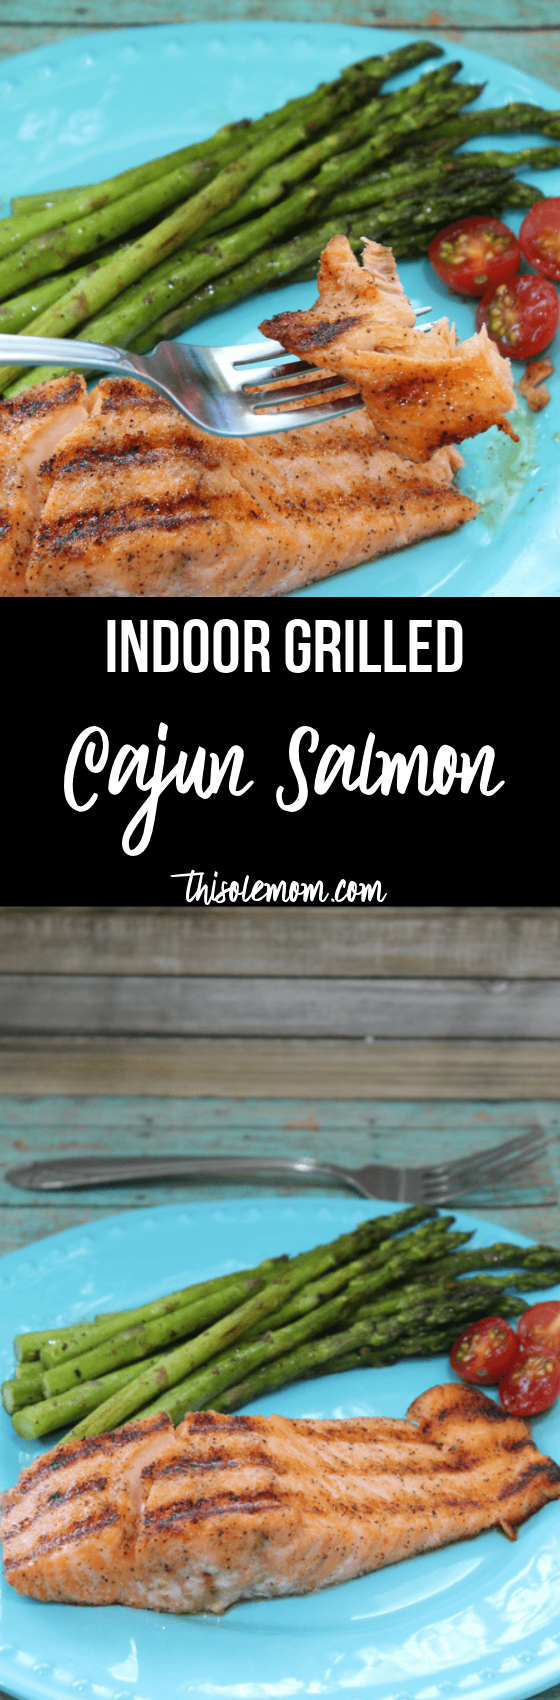 Indoor Grilled Cajun Salmon